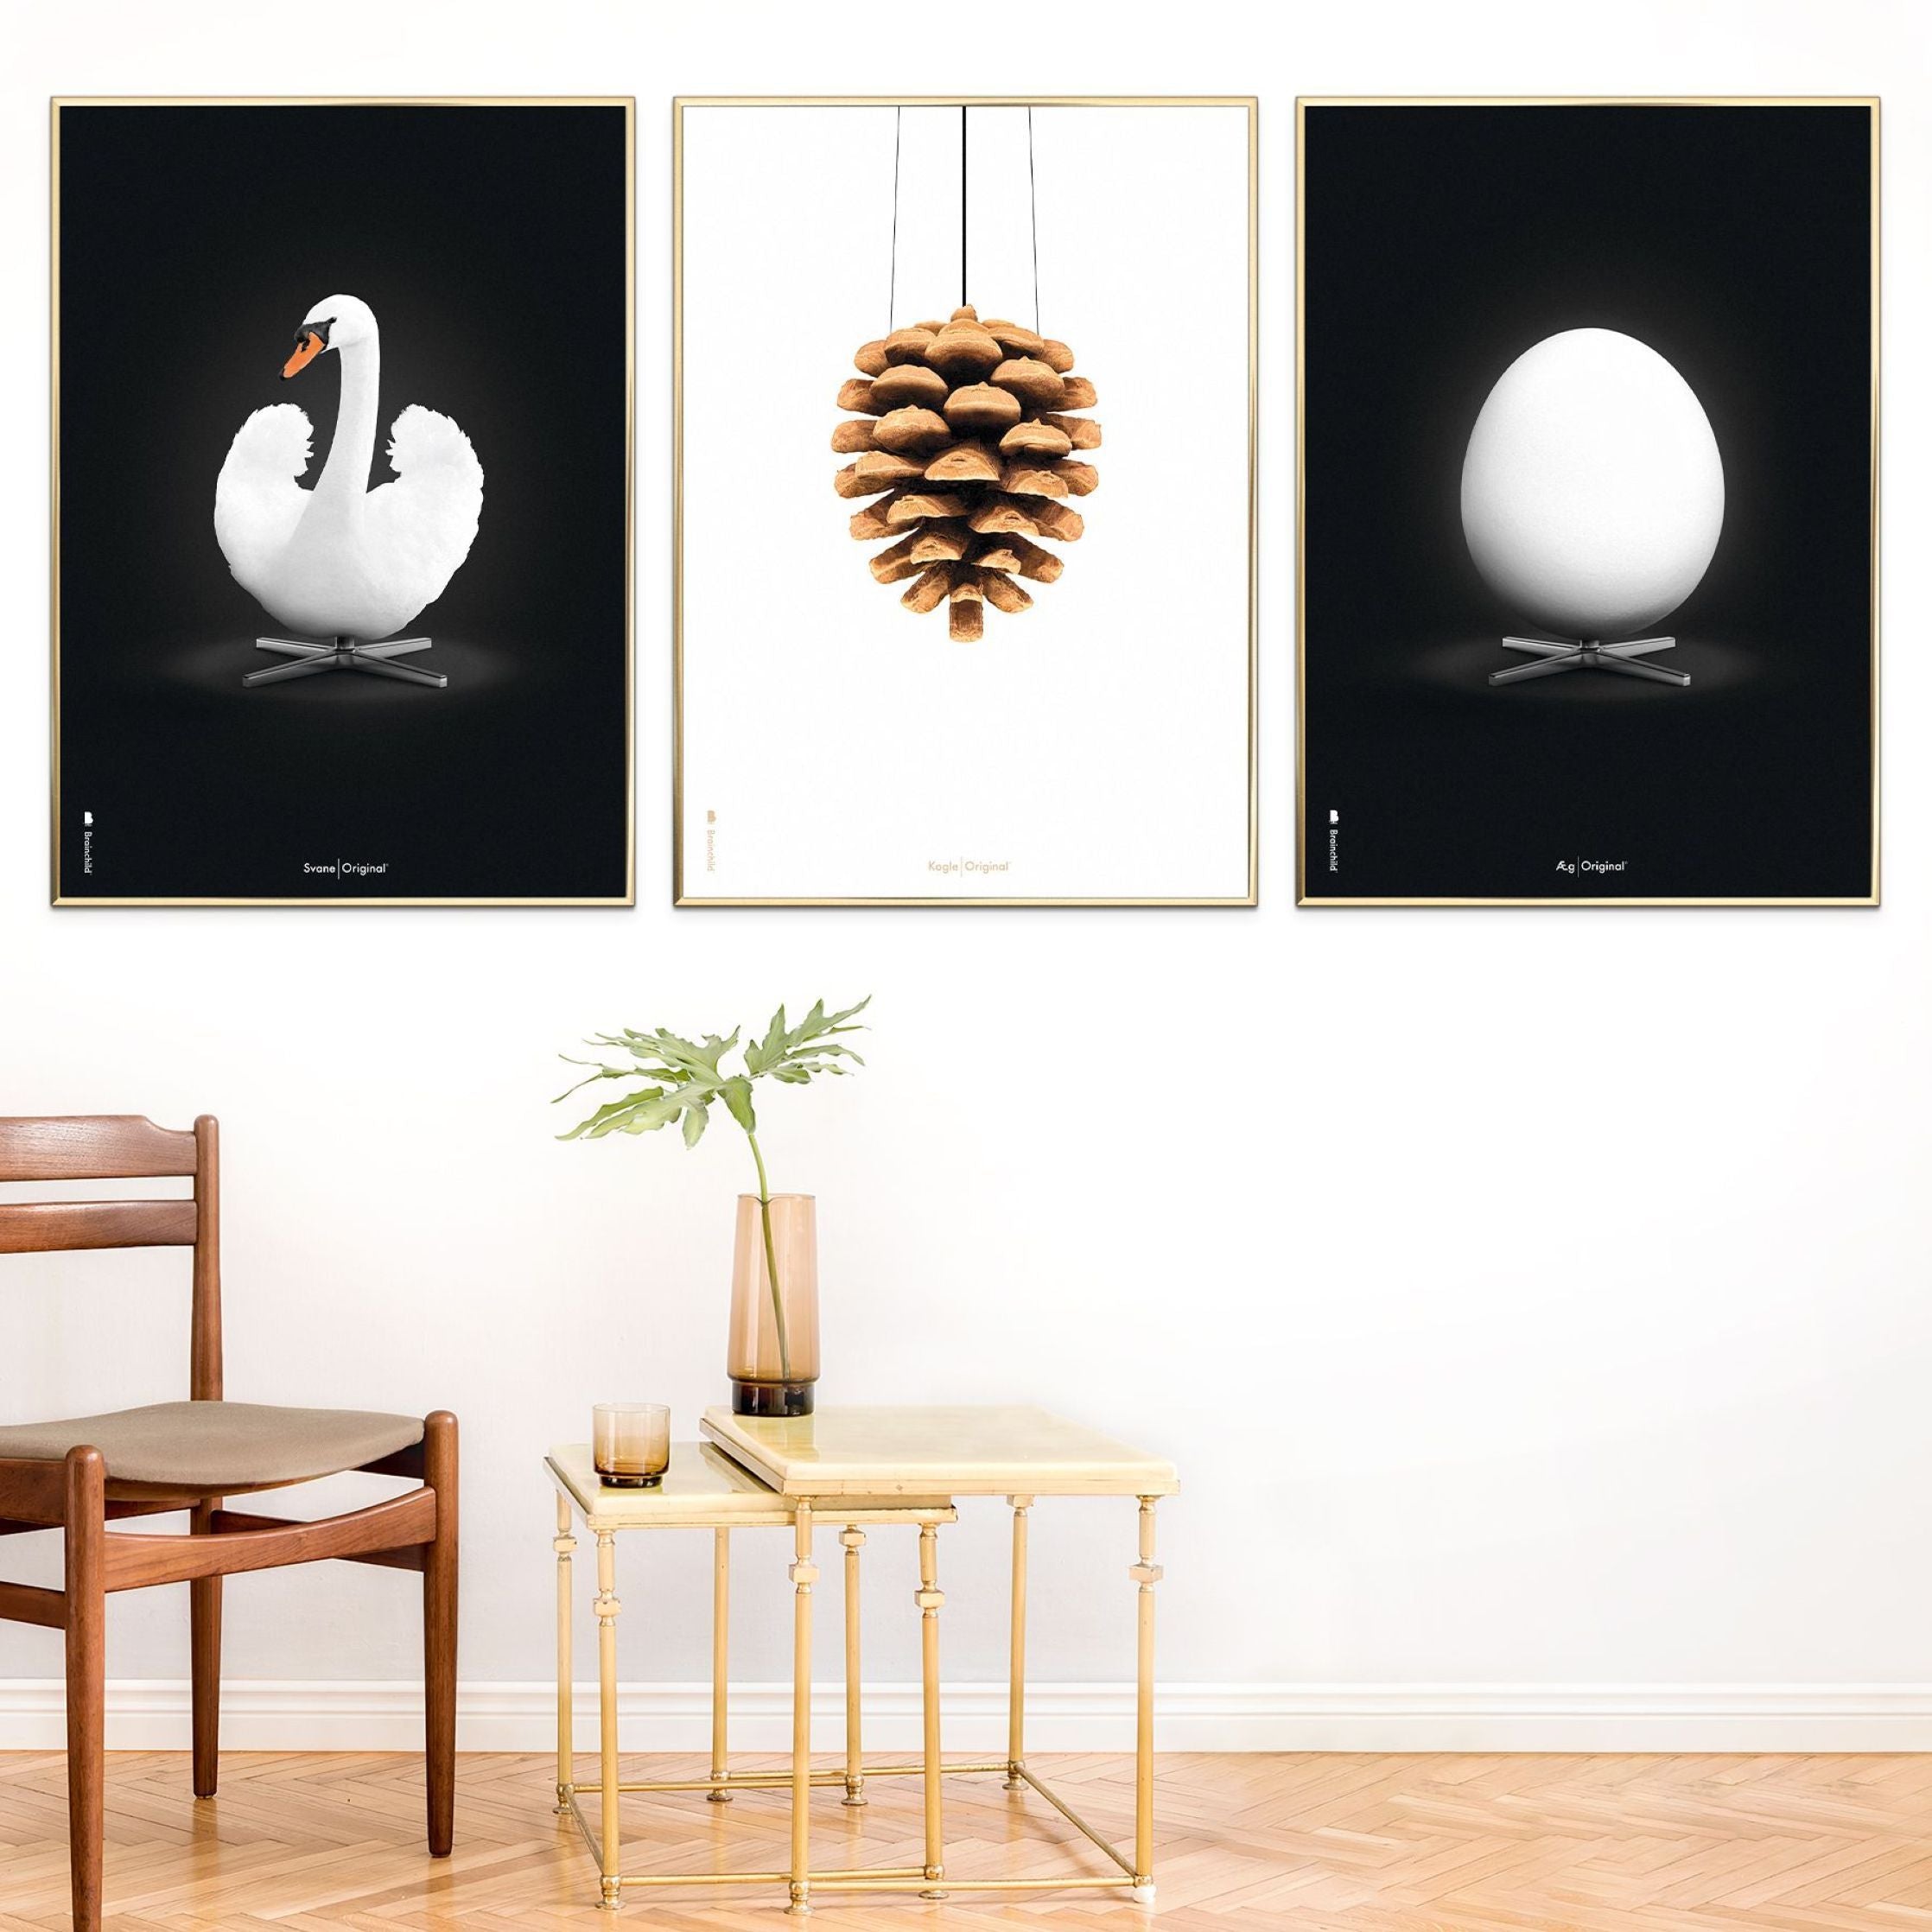 Brainchild Egg Classic Poster, Frame Made of Dark Wood 50x70 cm, svart bakgrunn